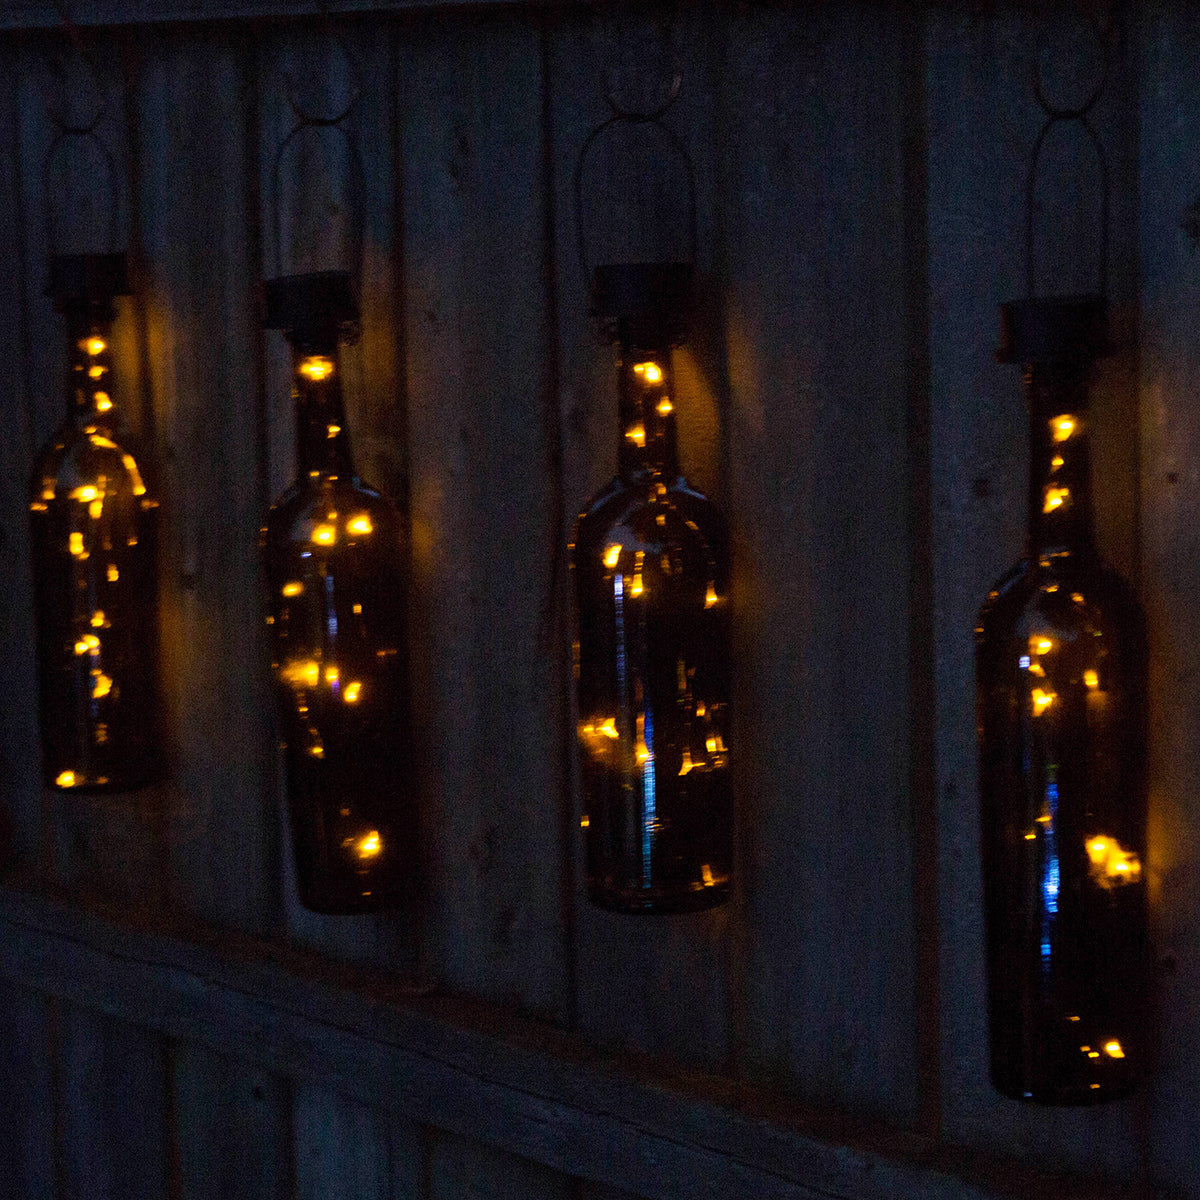 Auraglow DIY Bottle Lamp Kit – Twin Pack - Auraglow LED Lighting